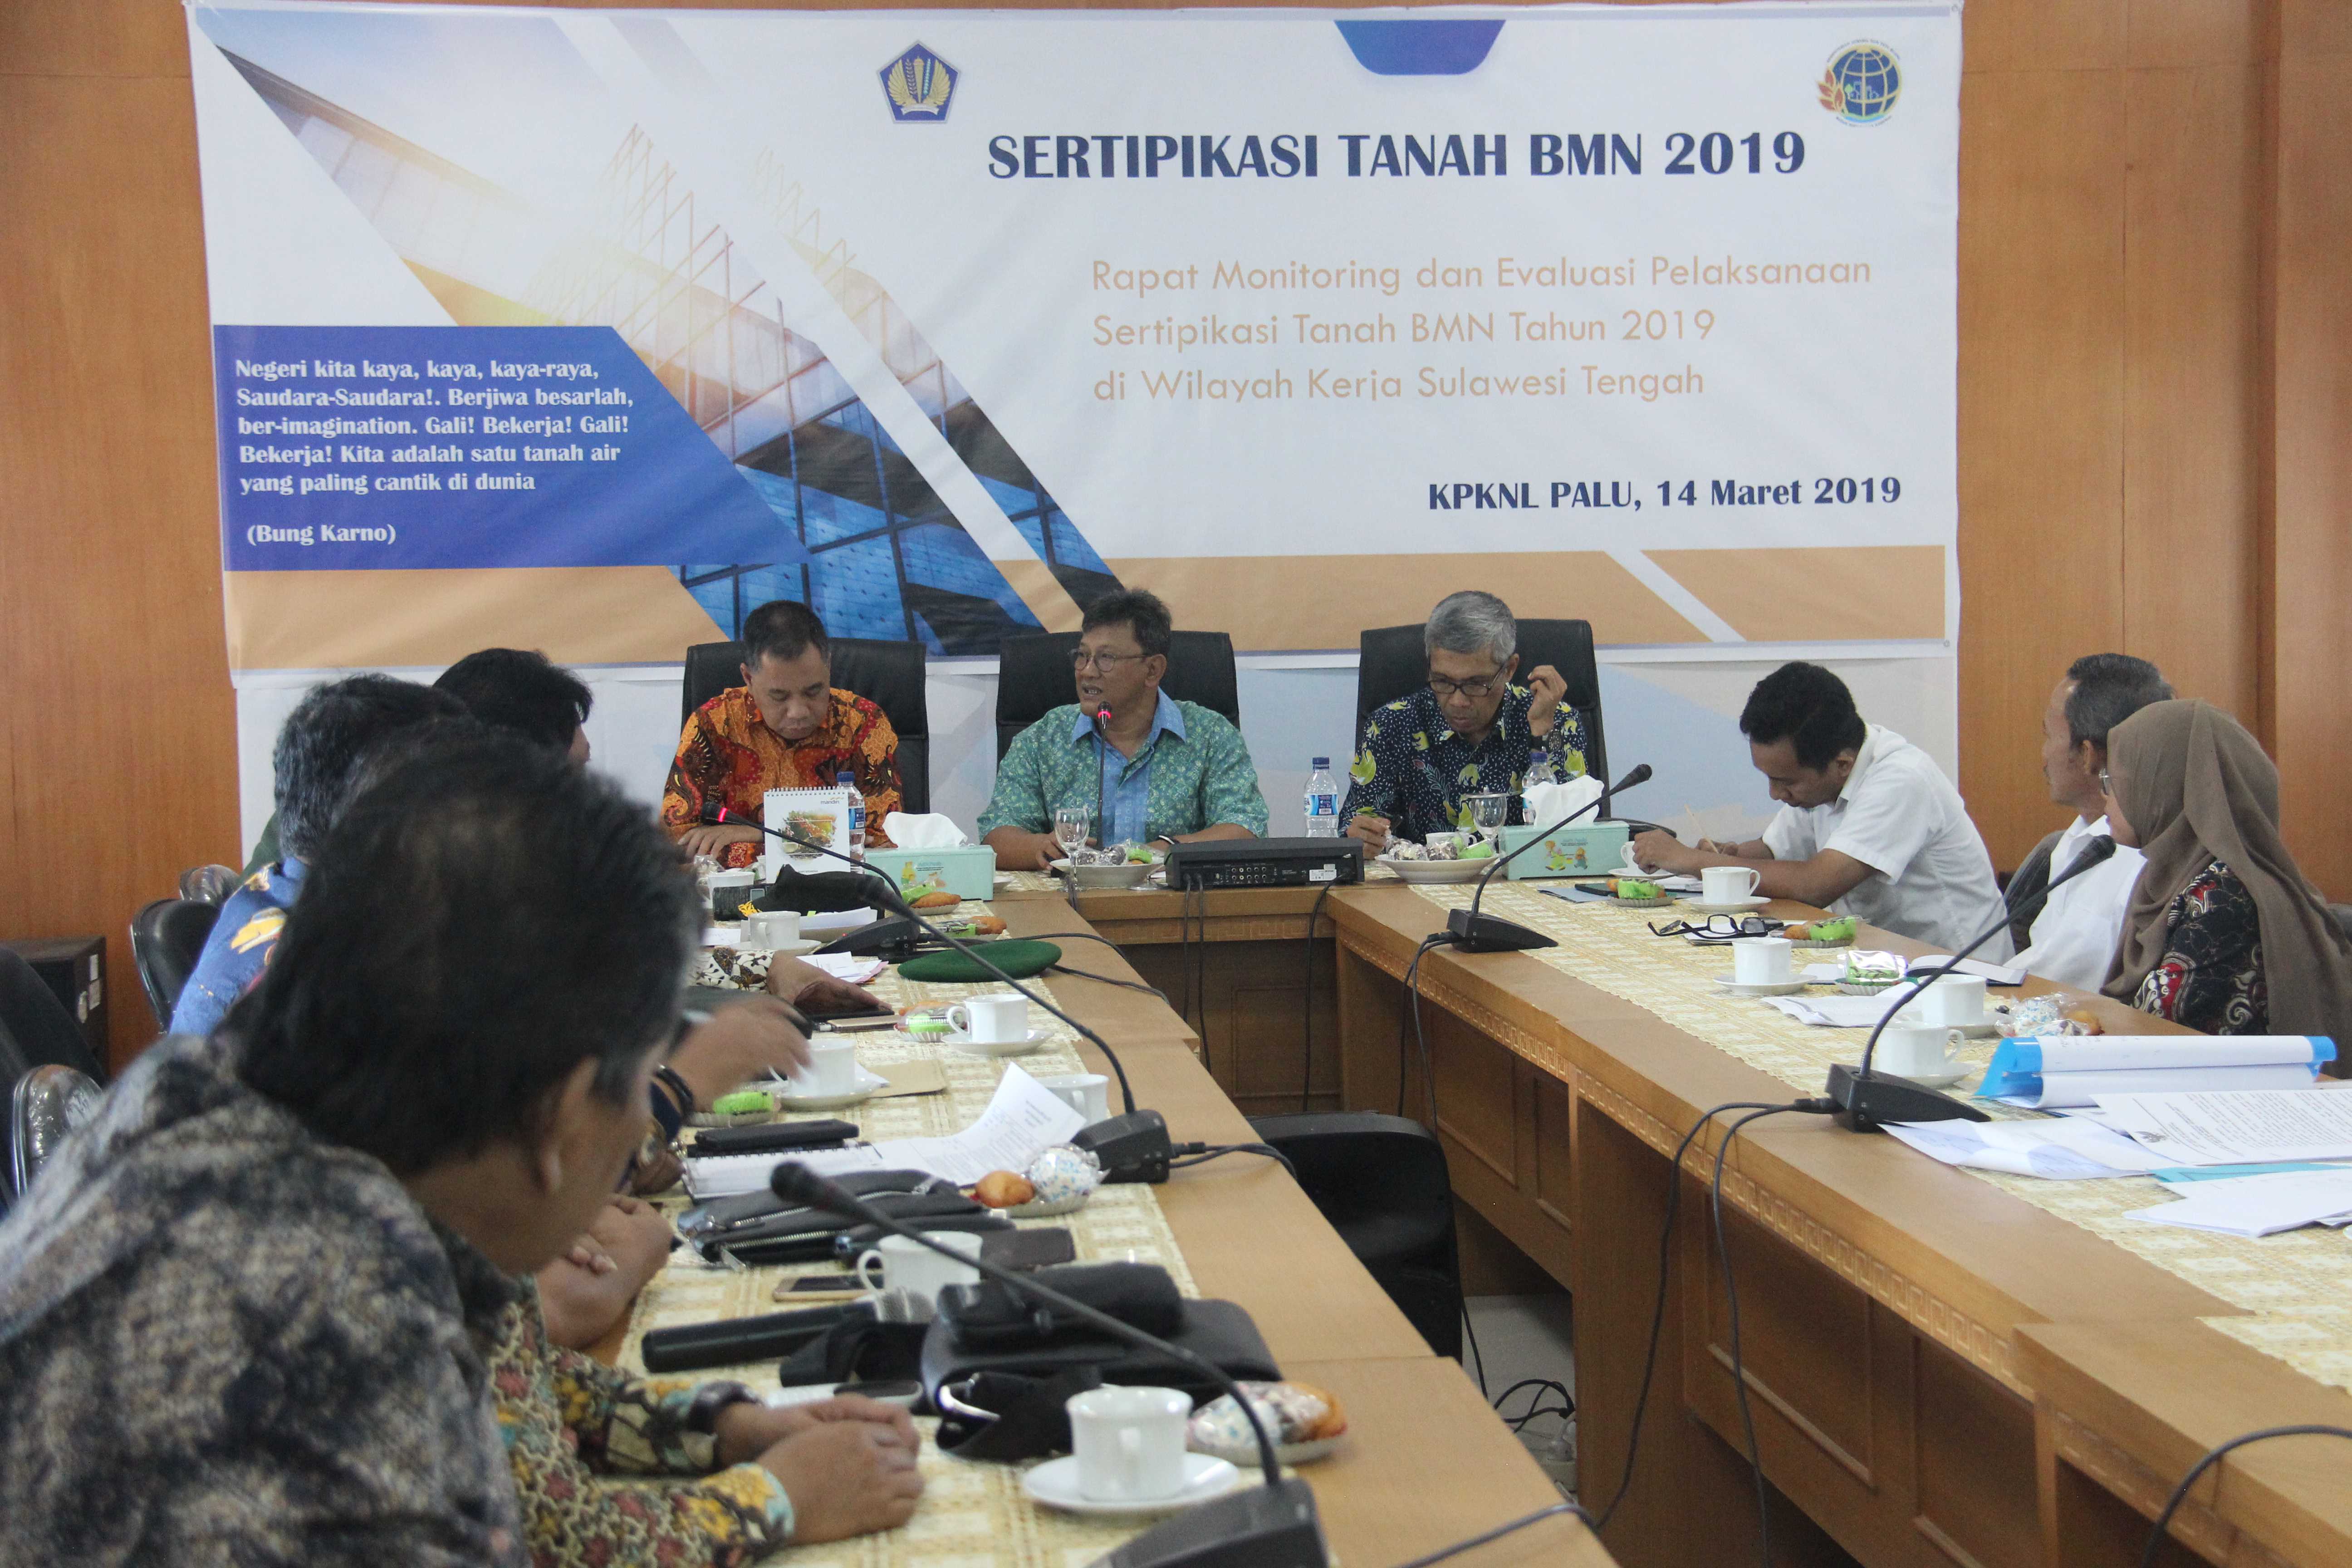 Rapat Monitoring dan Evaluasi Pelaksanaan Sertifikasi Tanah Barang Milik Negara (BMN) Tahun 2019 di Wilayah Sulawesi Tengah. 